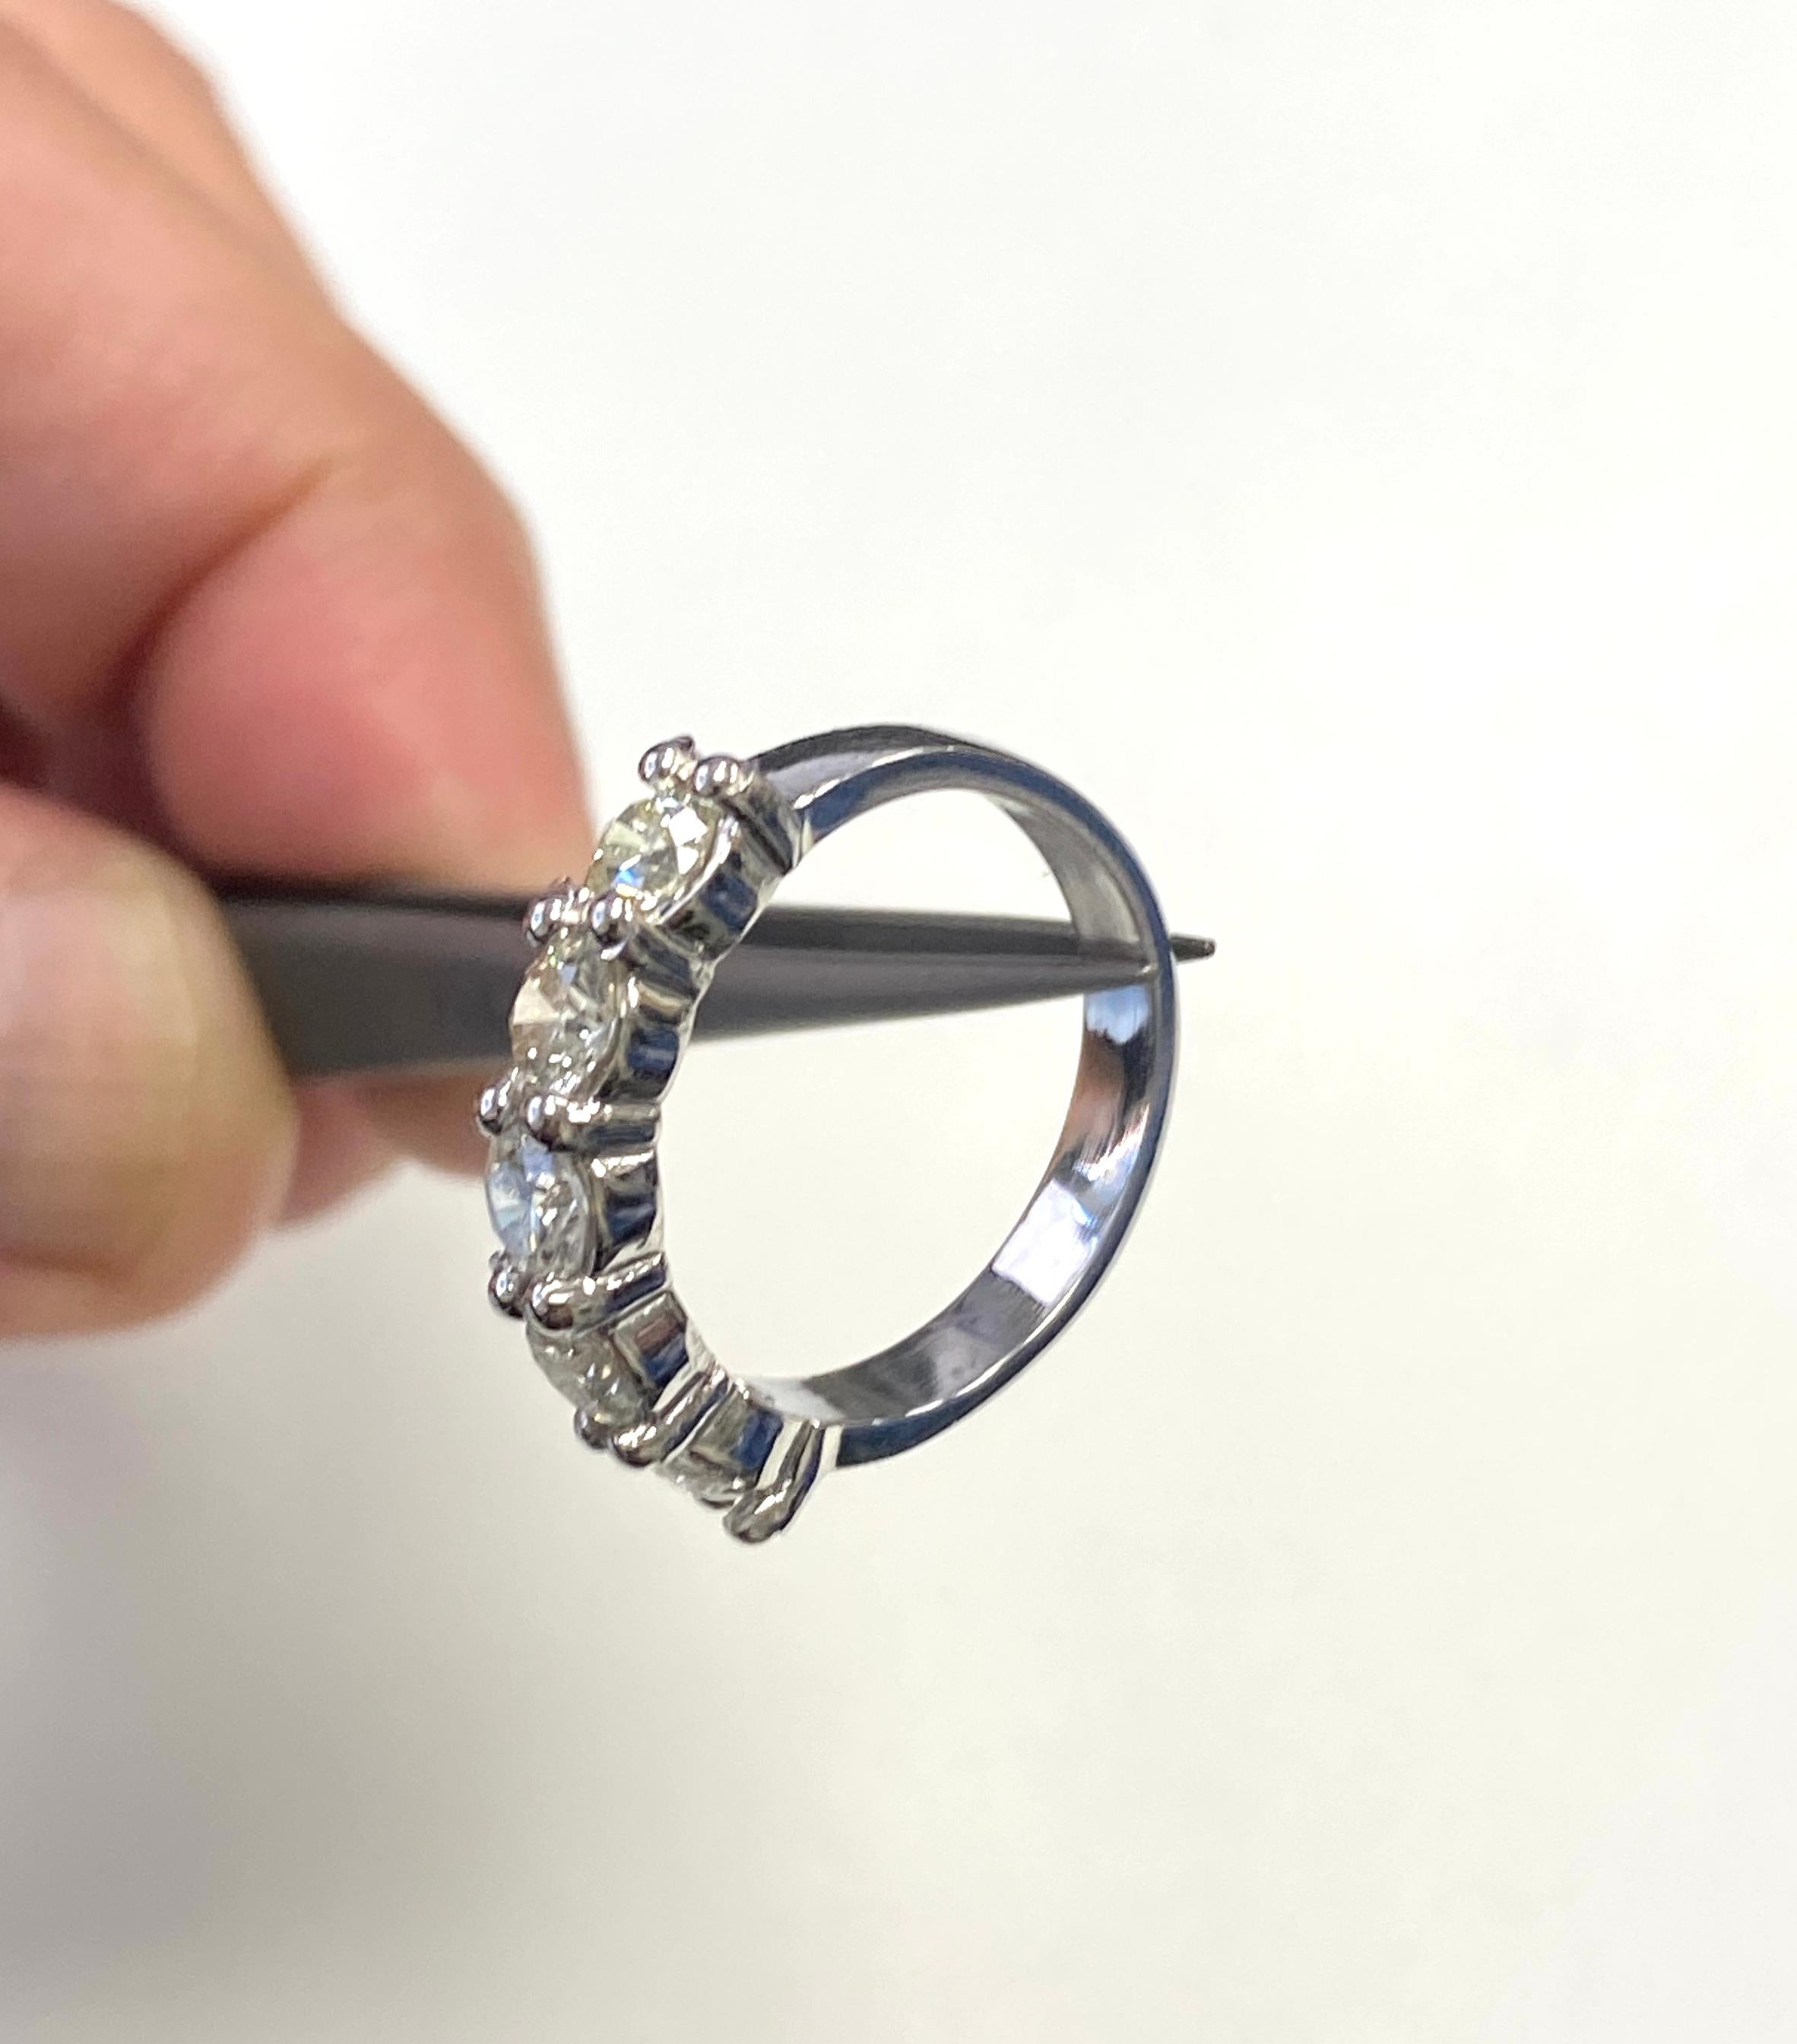 1.30 Carat Natural Diamond White Gold Mini band Ring 14K 
Taille de bague 6.5, moyenne g-h,vs  4,38 grammes.

*Expédition gratuite aux États-Unis